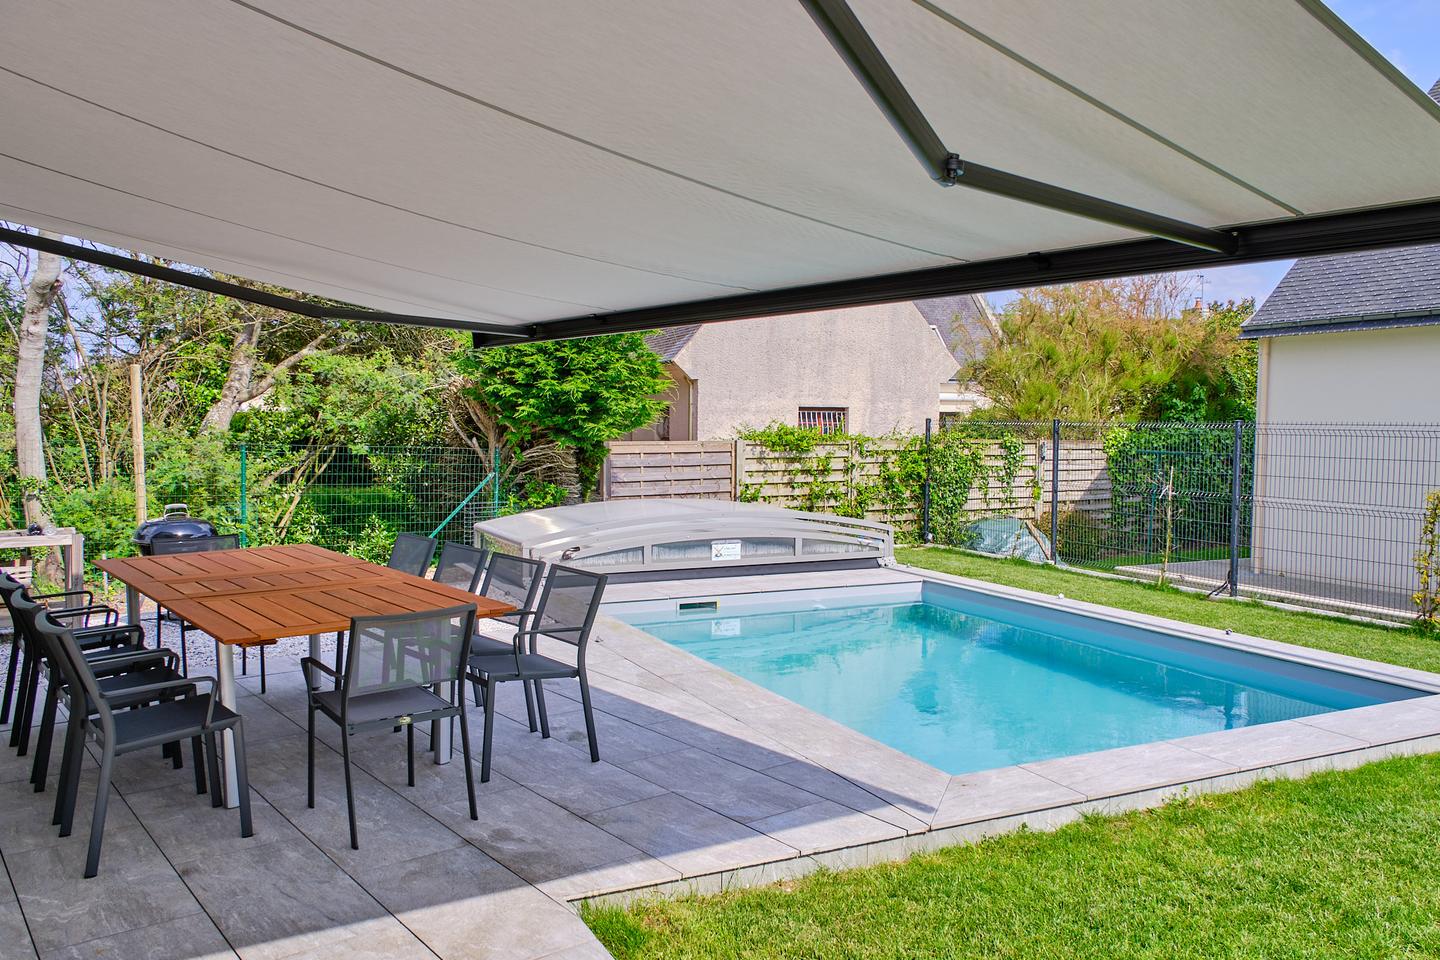 Hôte GreenGo: Grande maison familiale avec piscine pour 10 personnes, 12 max. Note de 4.9 sur une autre plateforme - Image 29